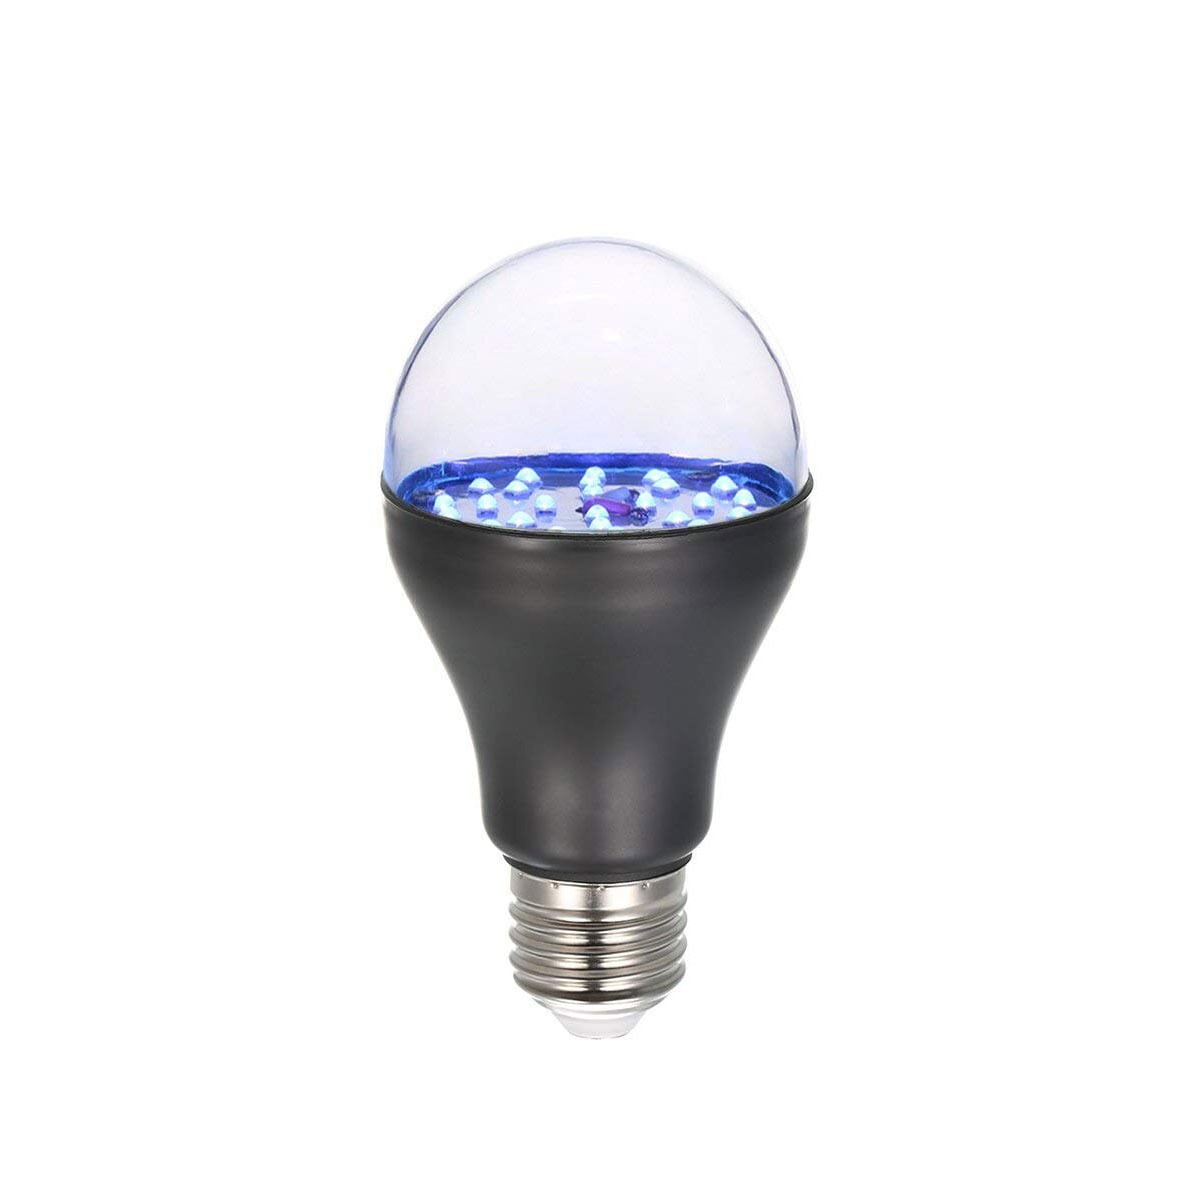 UV LED Bulb in led bulb